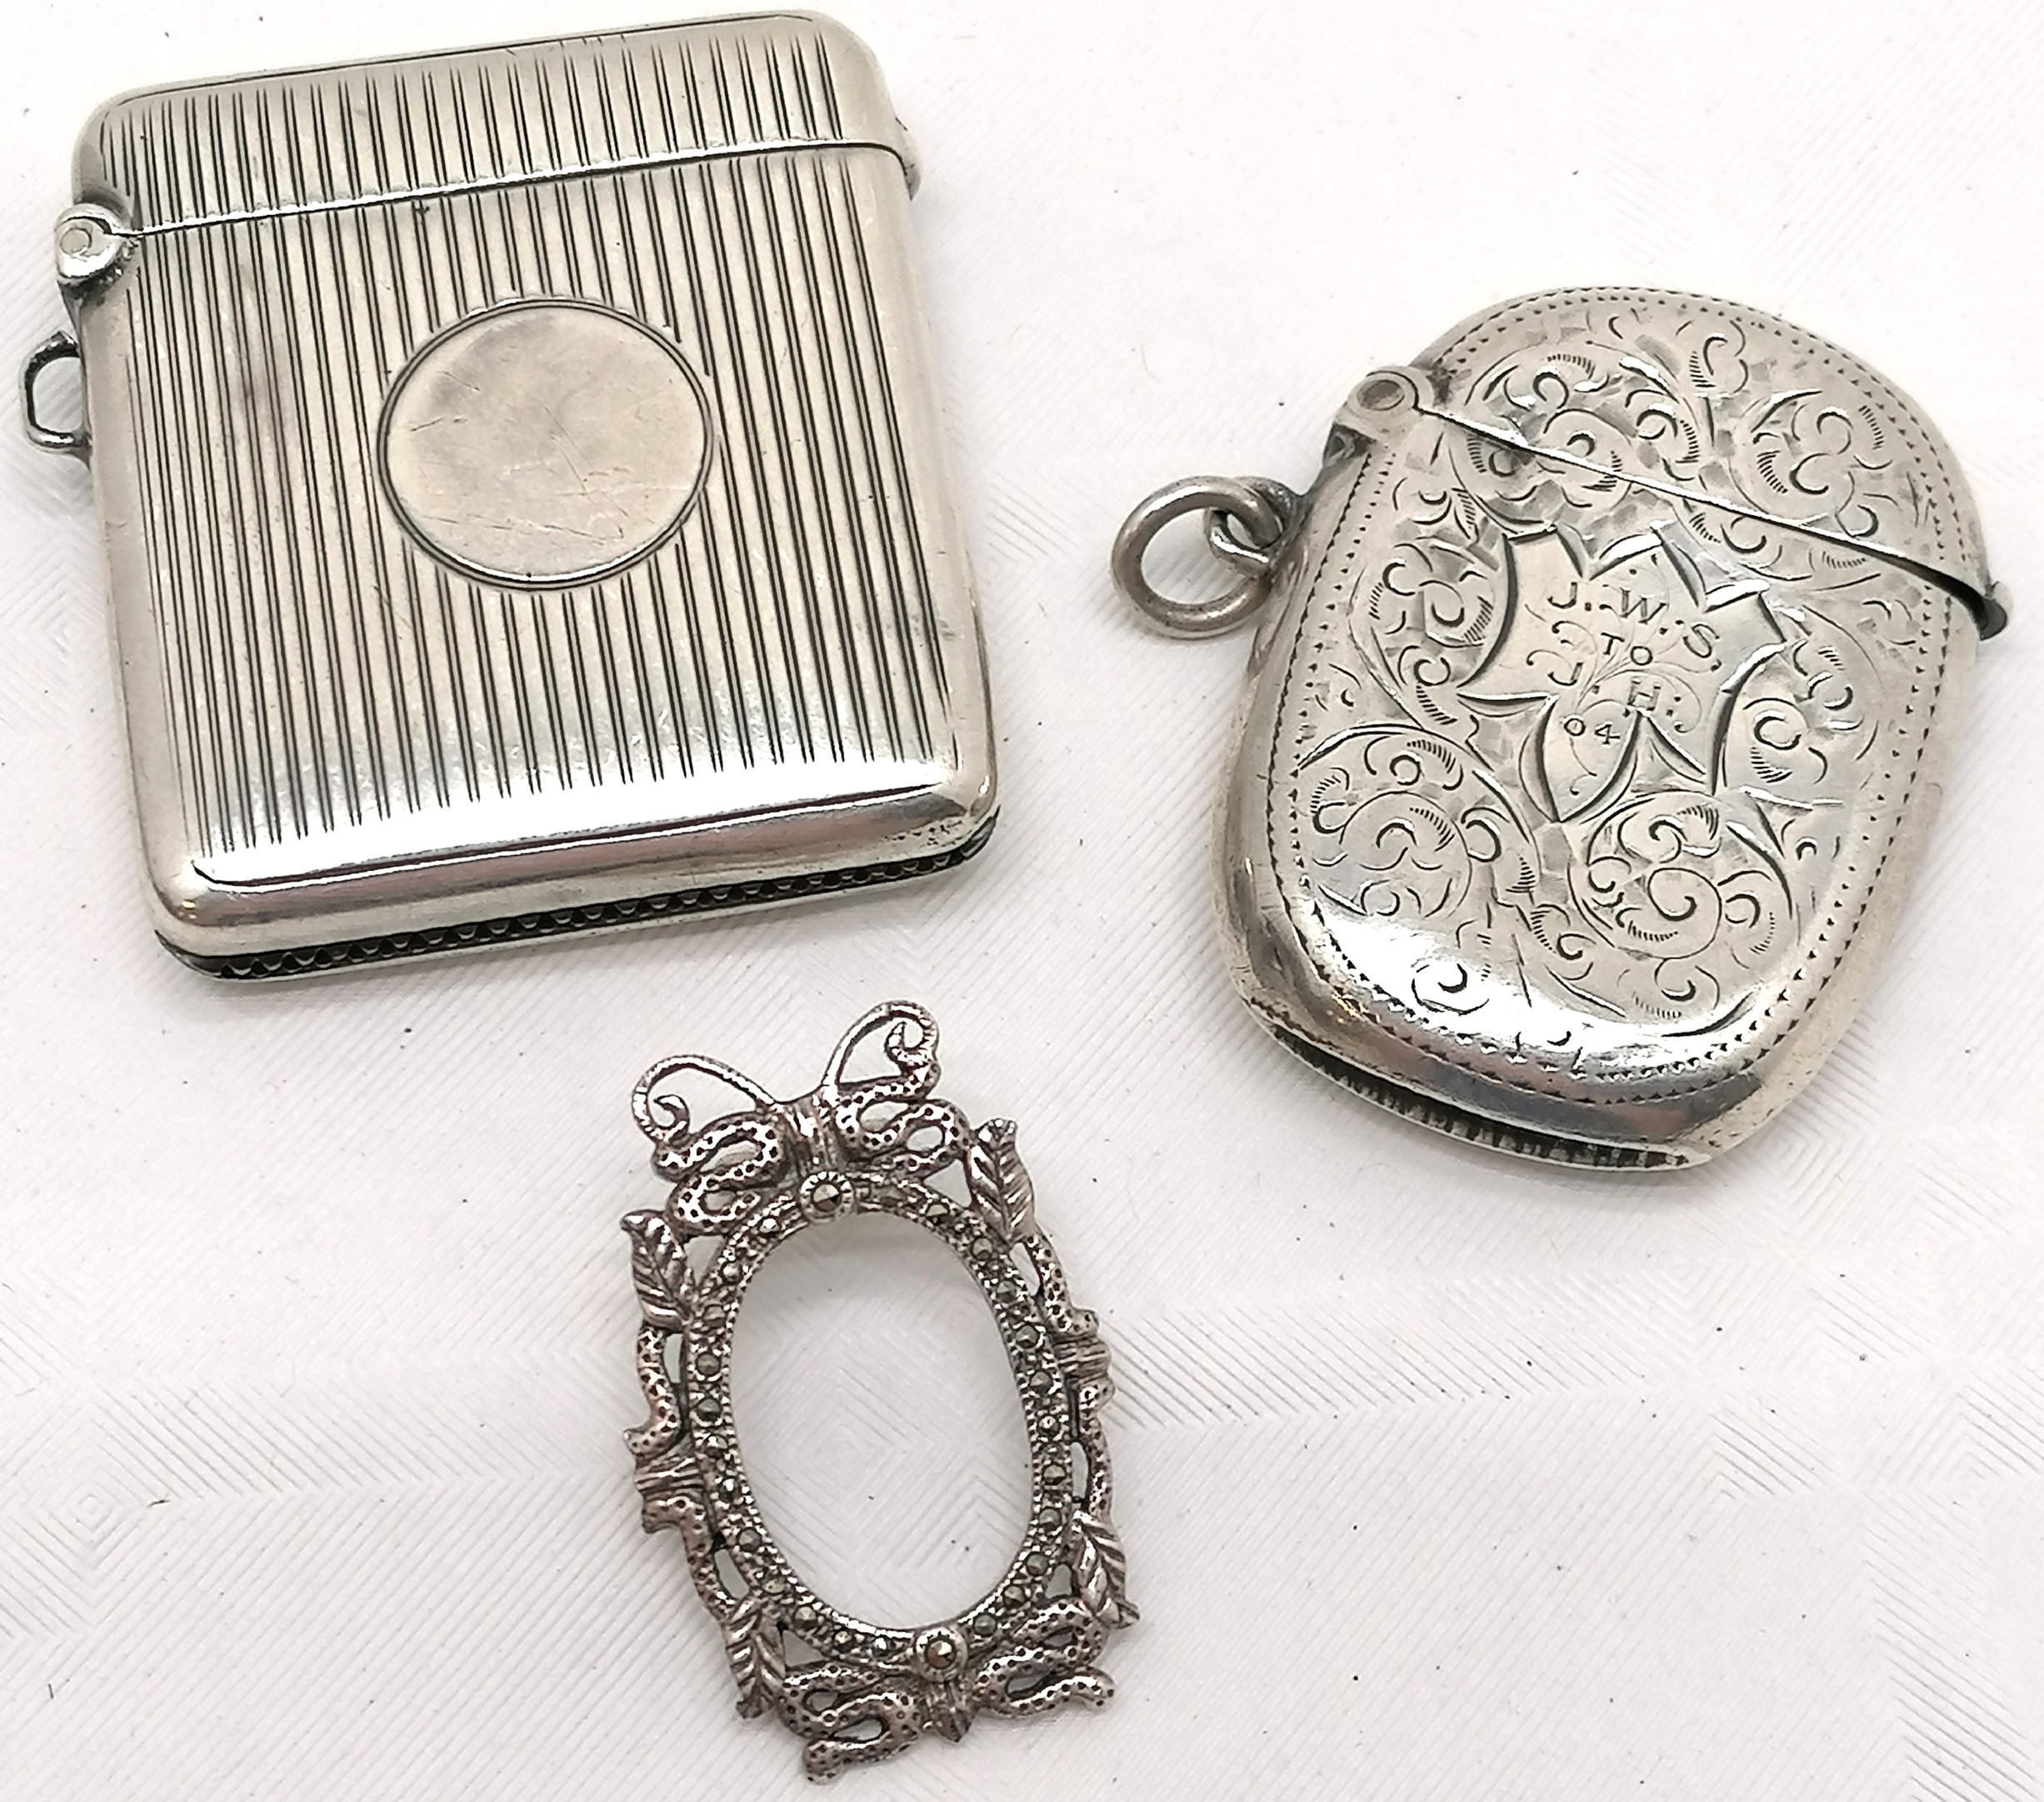 2 x silver vestas (largest 4.8cm x 4.2cm) - both have slight dents t/w silver miniature frame set